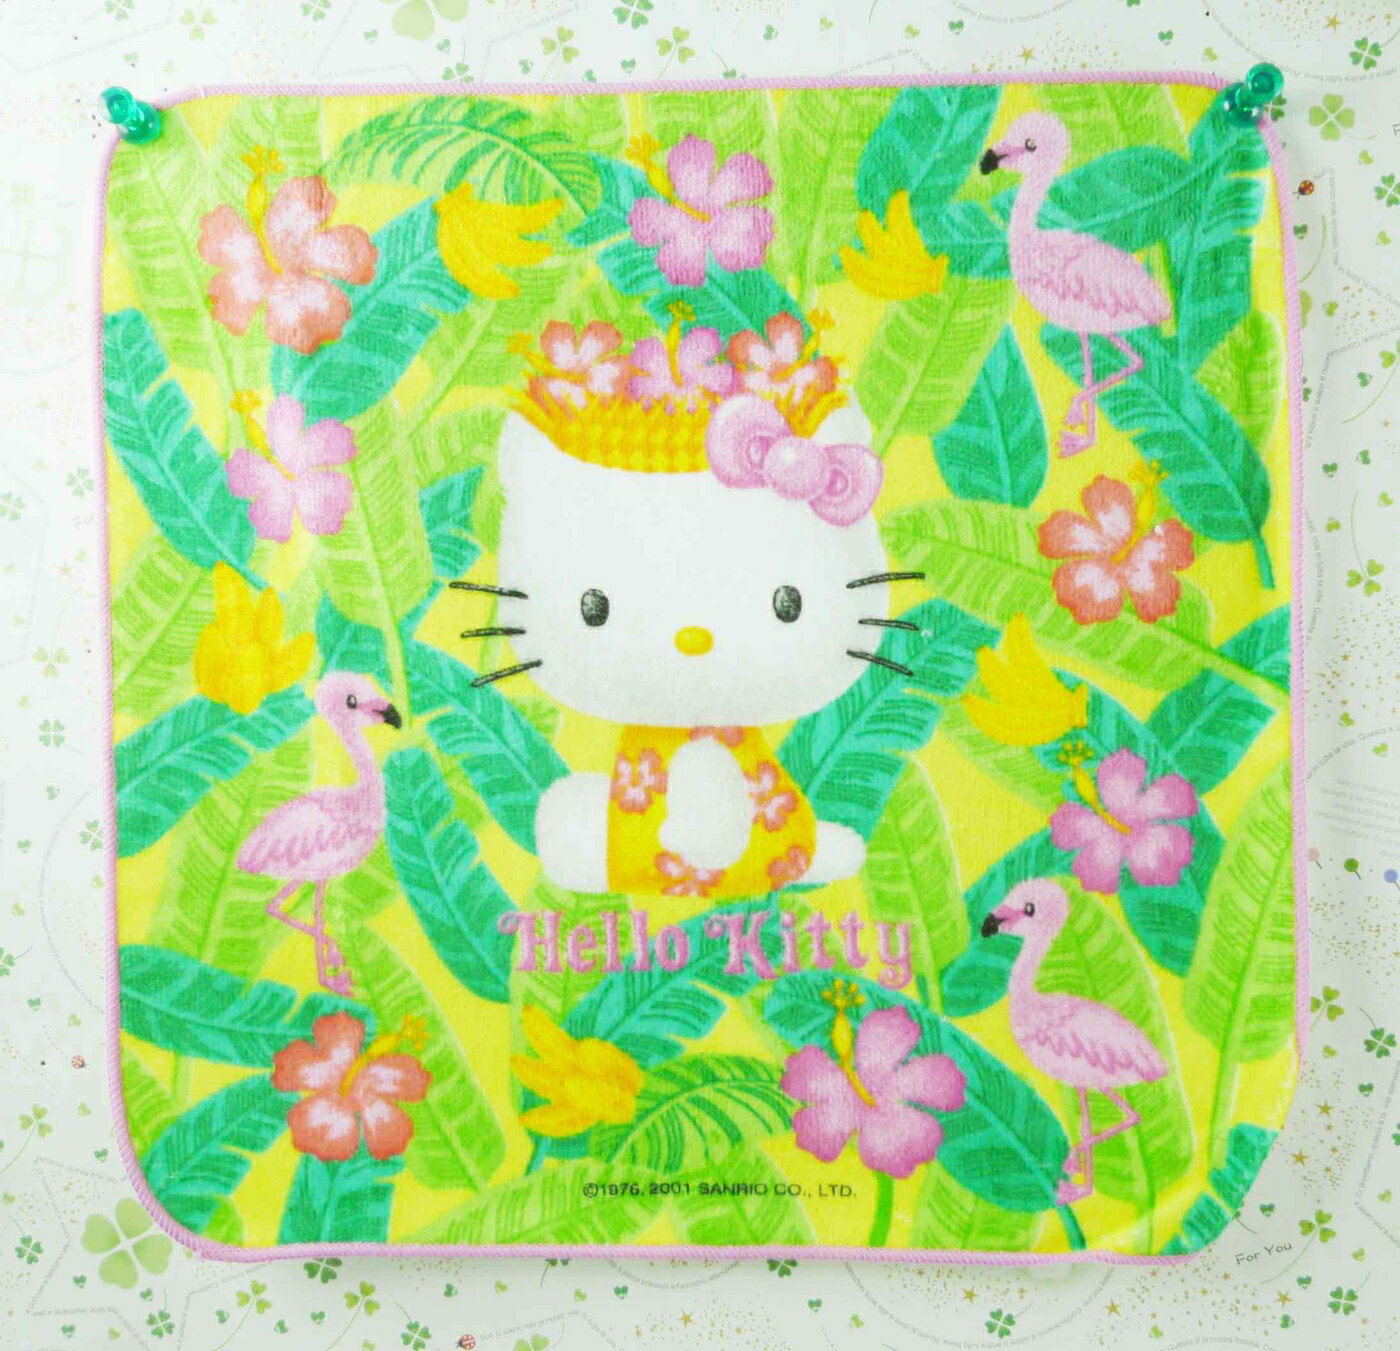 【震撼精品百貨】Hello Kitty 凱蒂貓 方巾-熱帶皇冠 震撼日式精品百貨